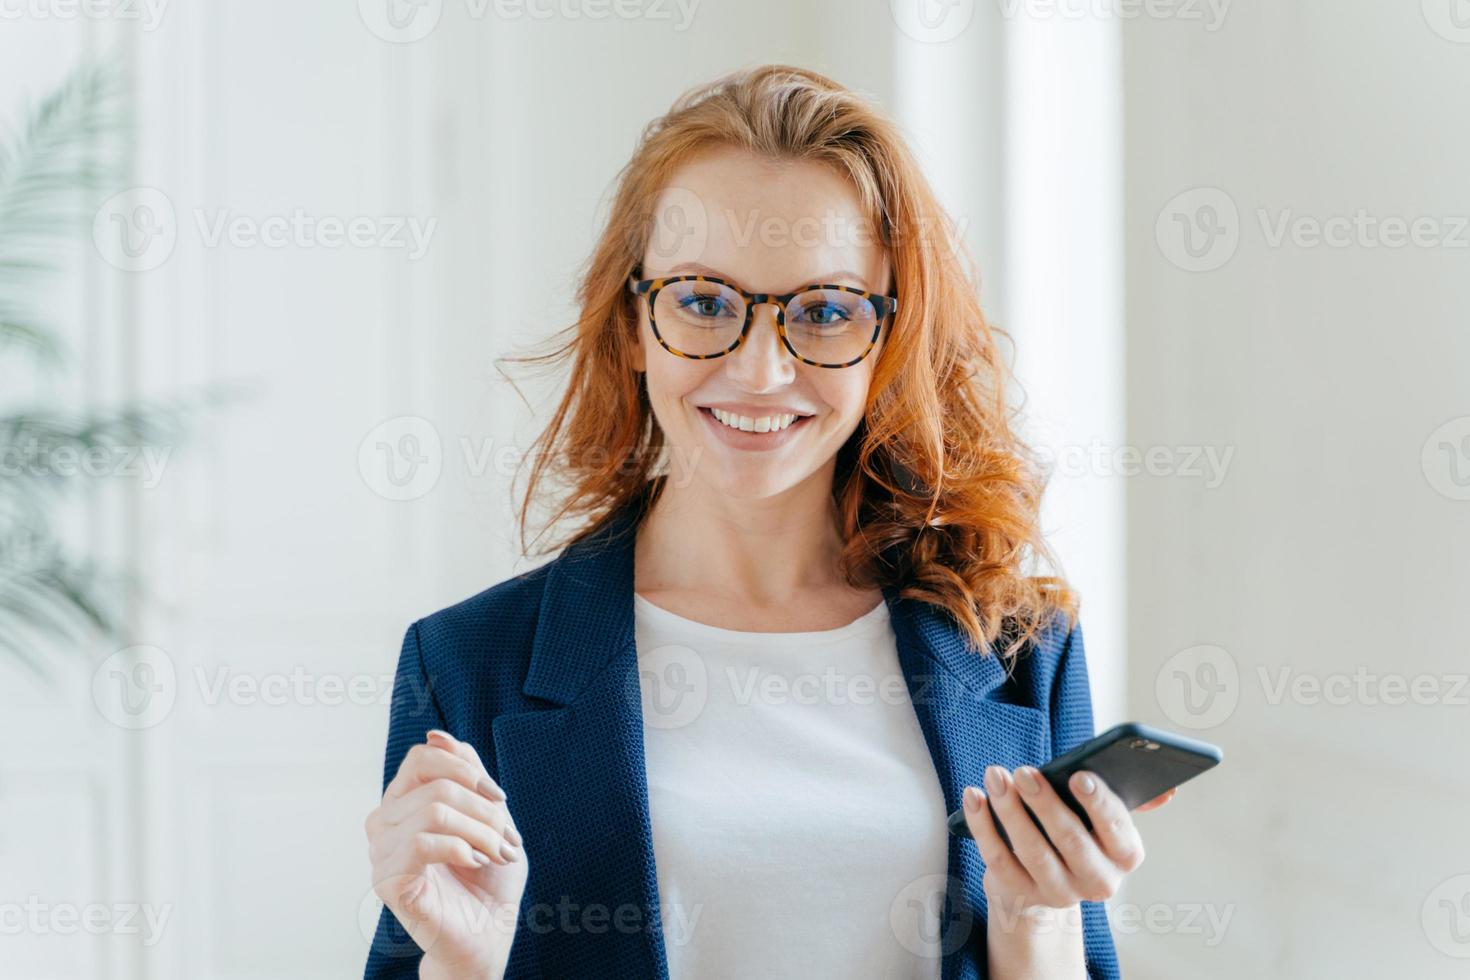 foto av glad kvinnlig ledare med ingefära hår, bär glasögon, uppdaterar app på modern mobiltelefon, bär eleganta kläder, poserar på modernt kontor, läser inkommande meddelande från affärspartner